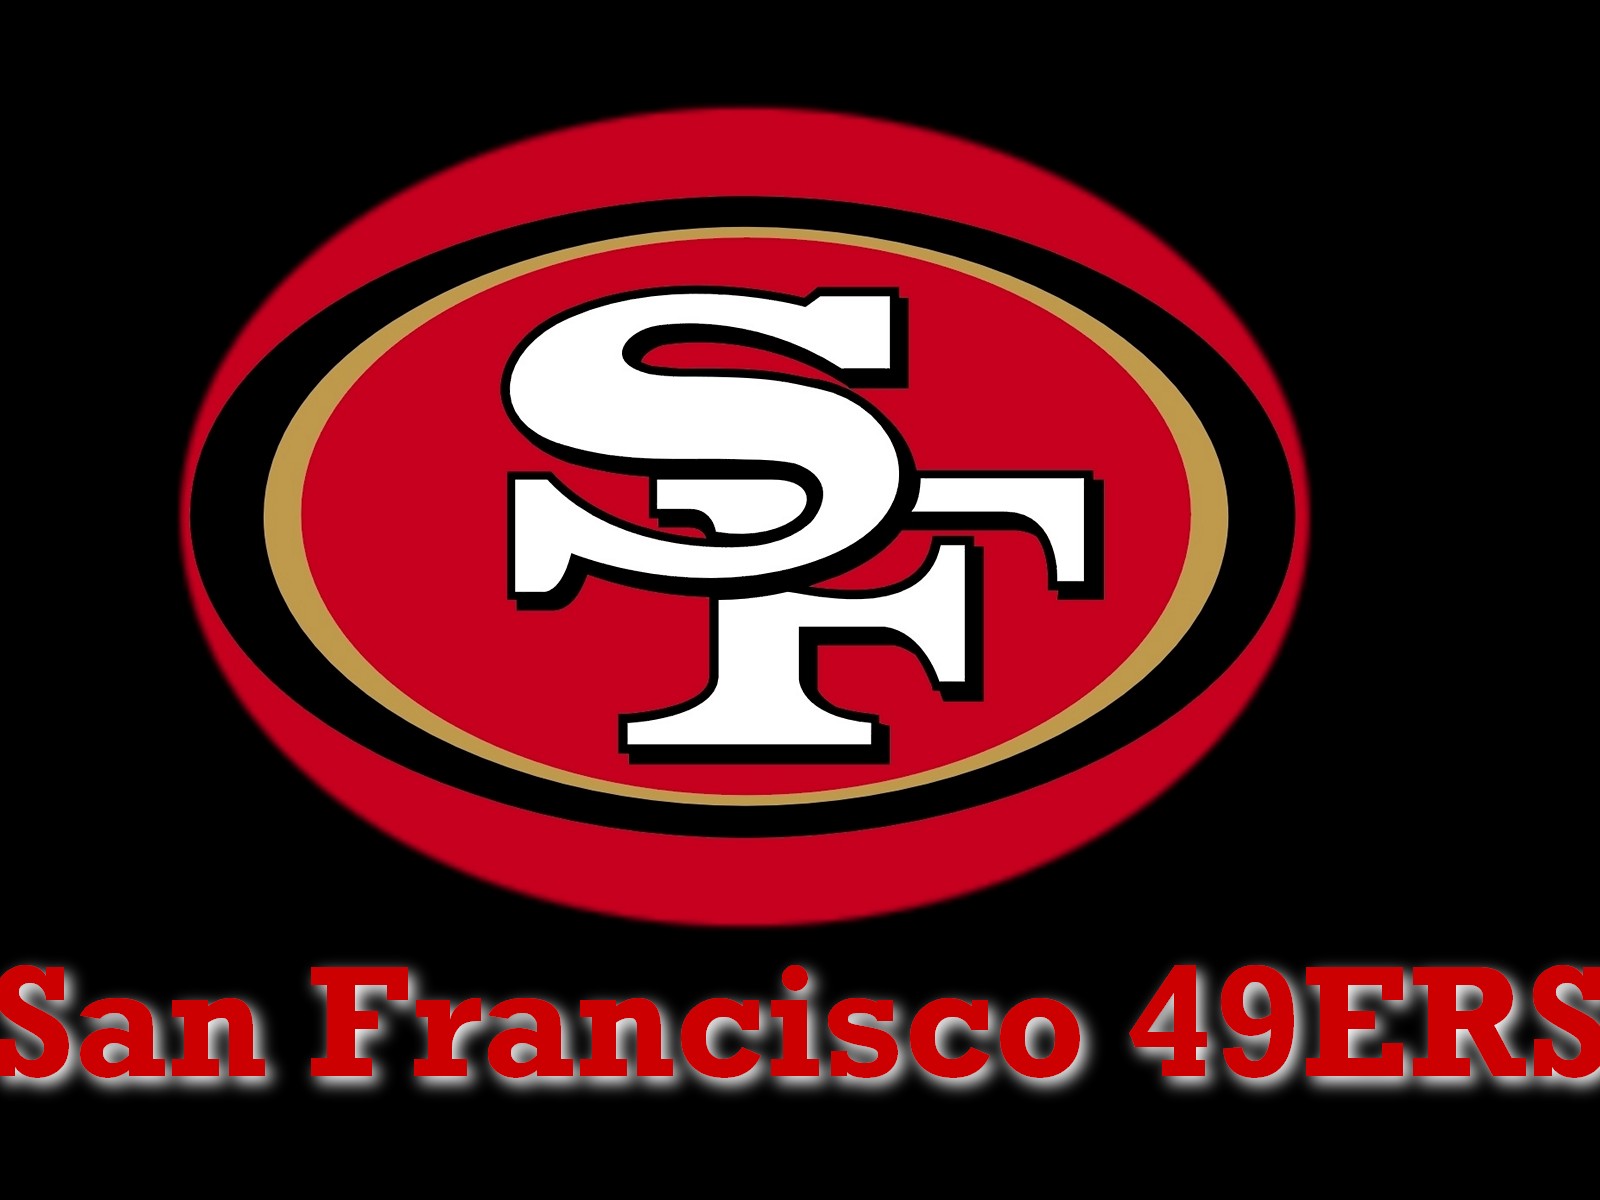 Hãy cùng xem hình nền logo San Francisco 49ers trên nền đen để khám phá sự độc đáo của thiết kế. Với màu sắc sặc sỡ và độ tối giản, thiết kế này sẽ mang lại cho bạn cảm giác mạnh mẽ và ấn tượng.